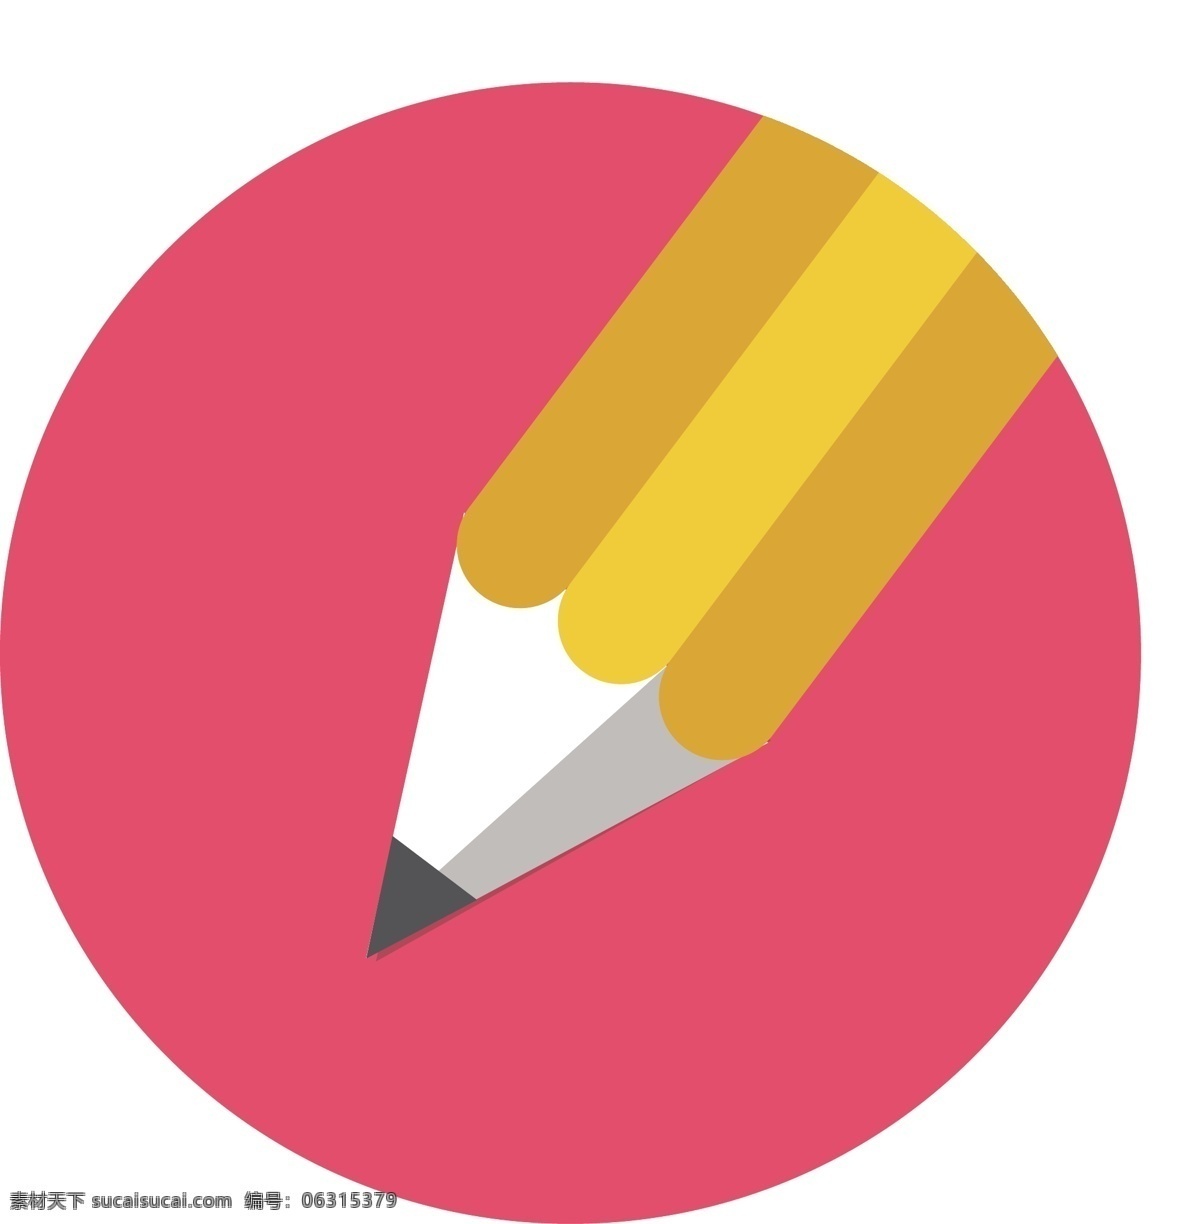 红色 立体 铅笔 图标 阴影 凸出 带橡皮檫 icon 按钮 渐变 高光 黄色 光感 扁平 笔刷